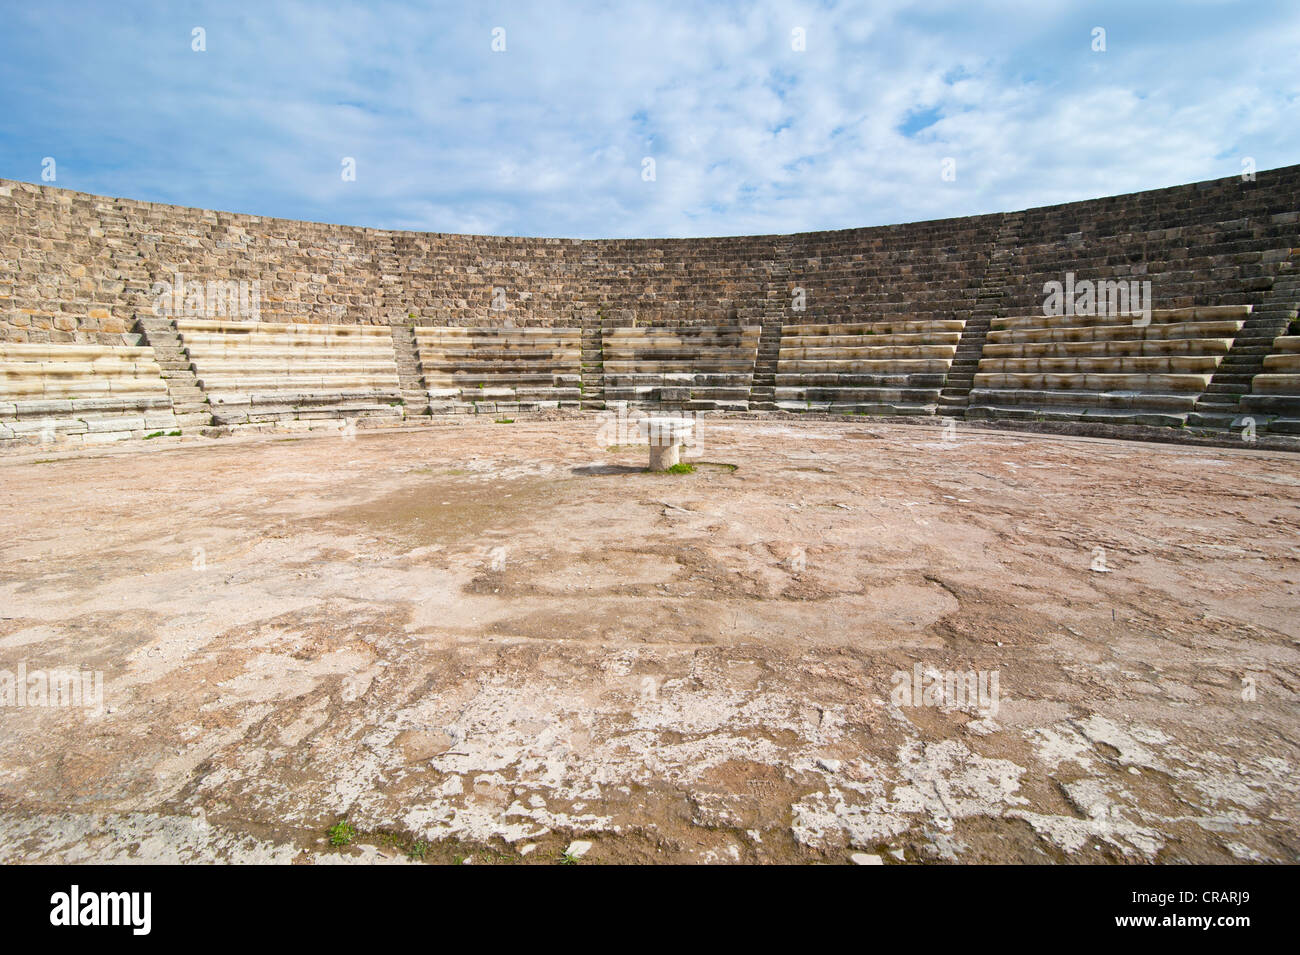 Amphitheater, römische Ausgrabungsstätte von Salamis, türkischen Teil von Zypern Stockfoto